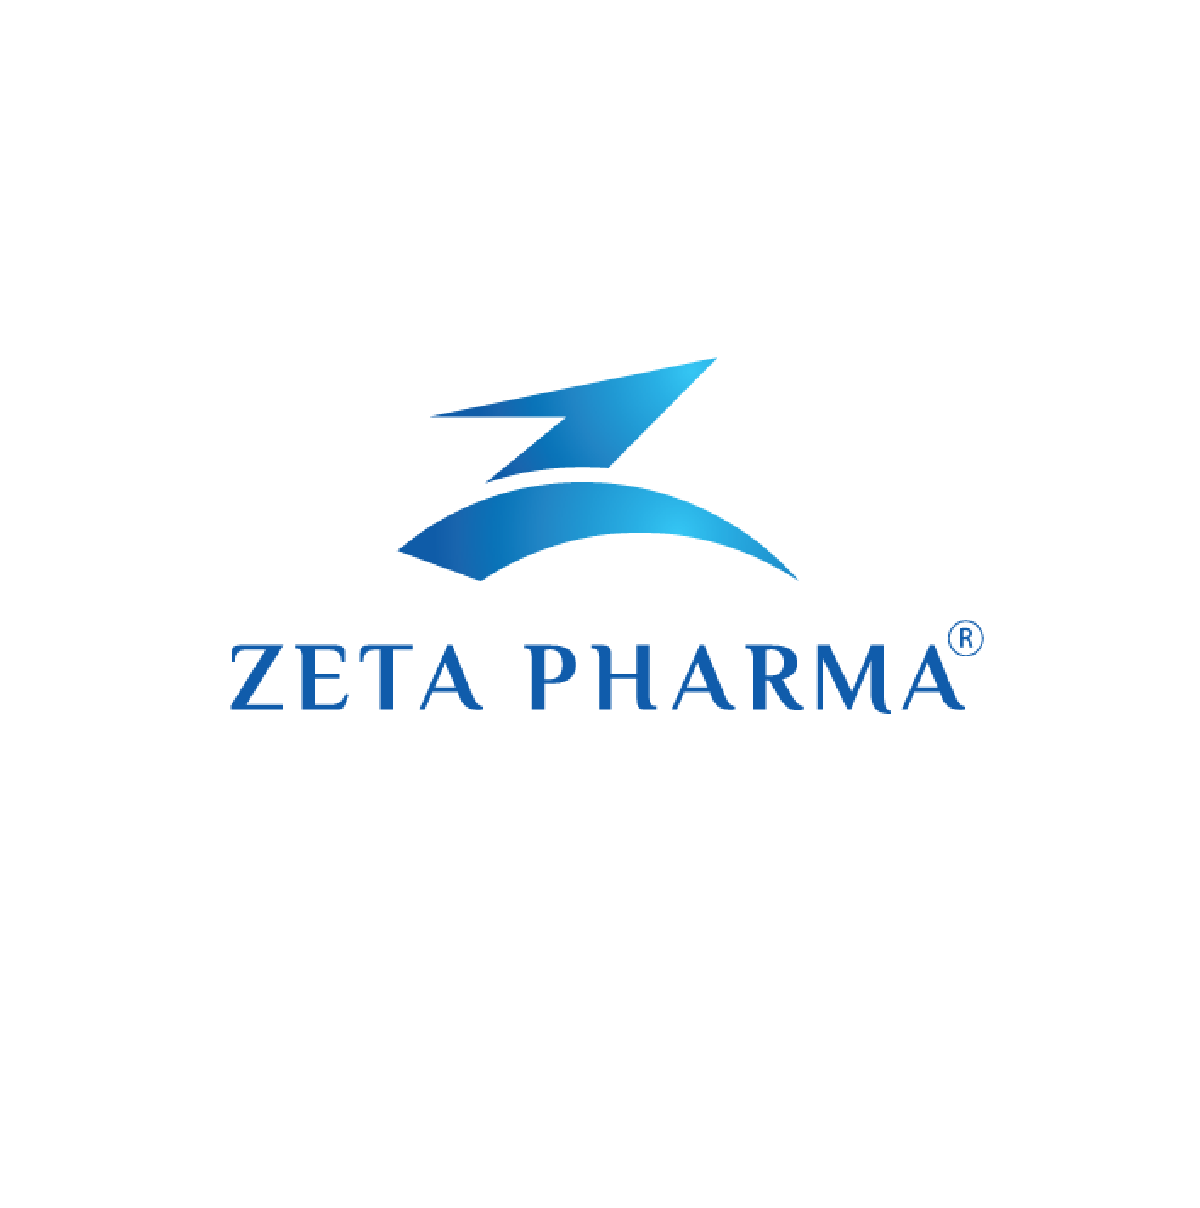 Zeta Pharma